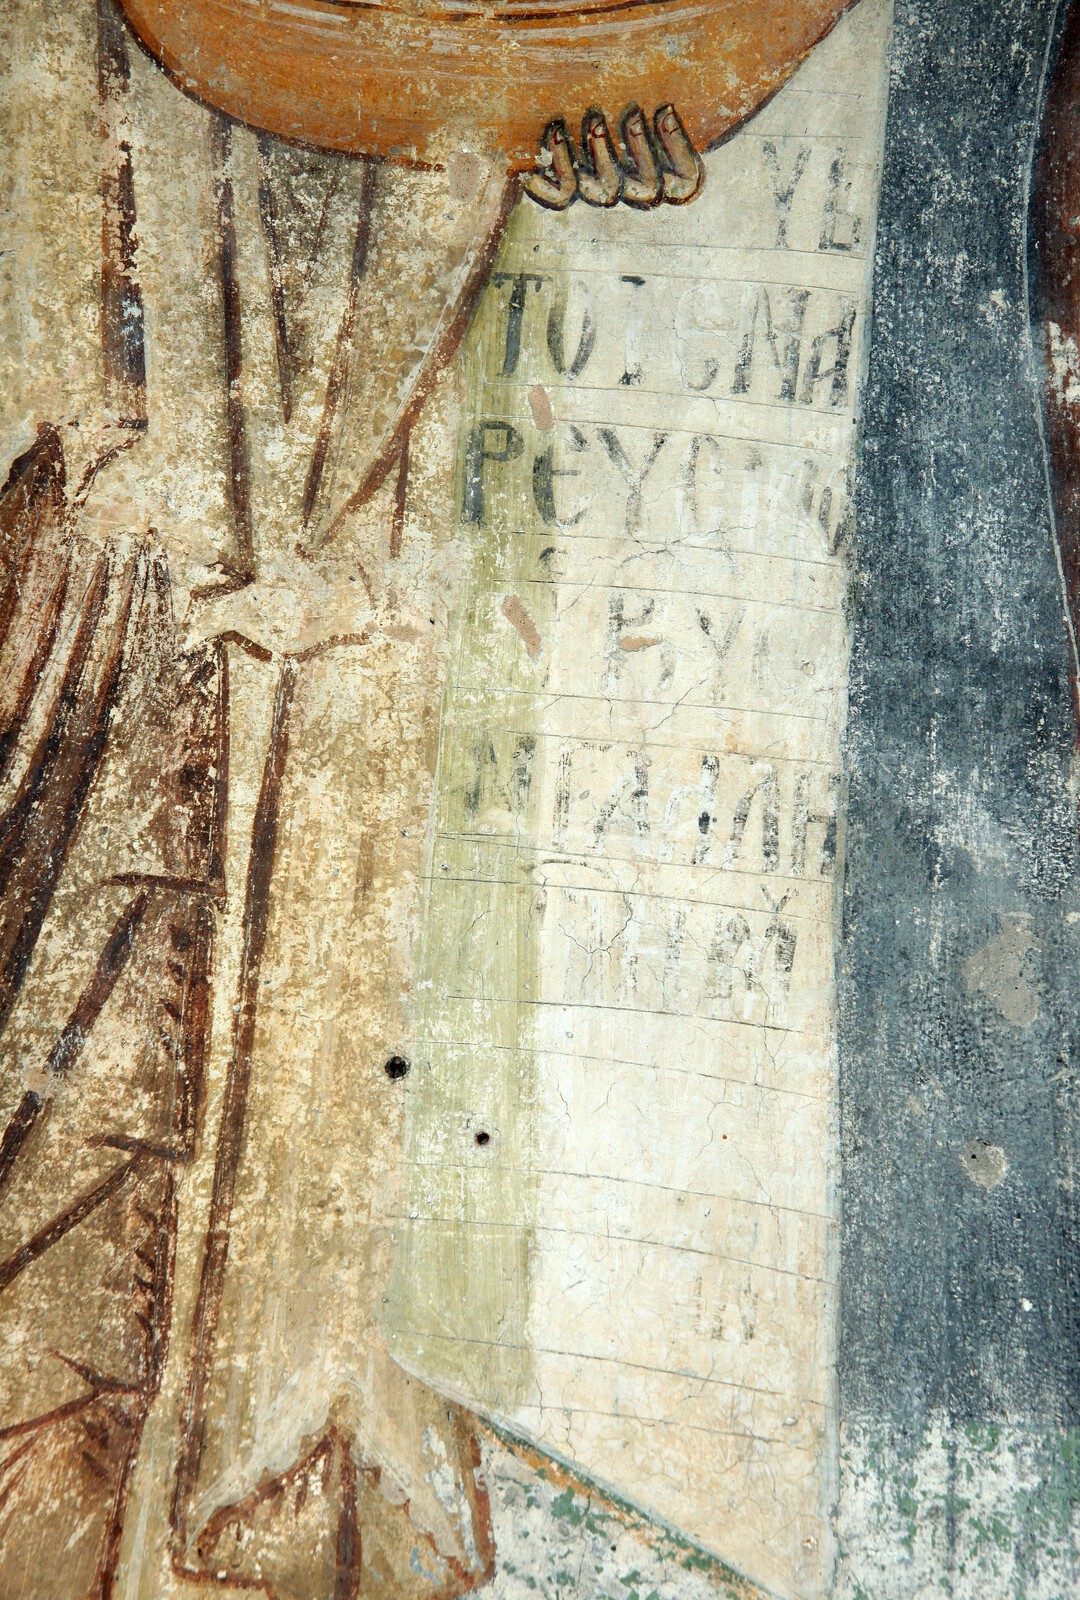 St. John the Baptist, detail